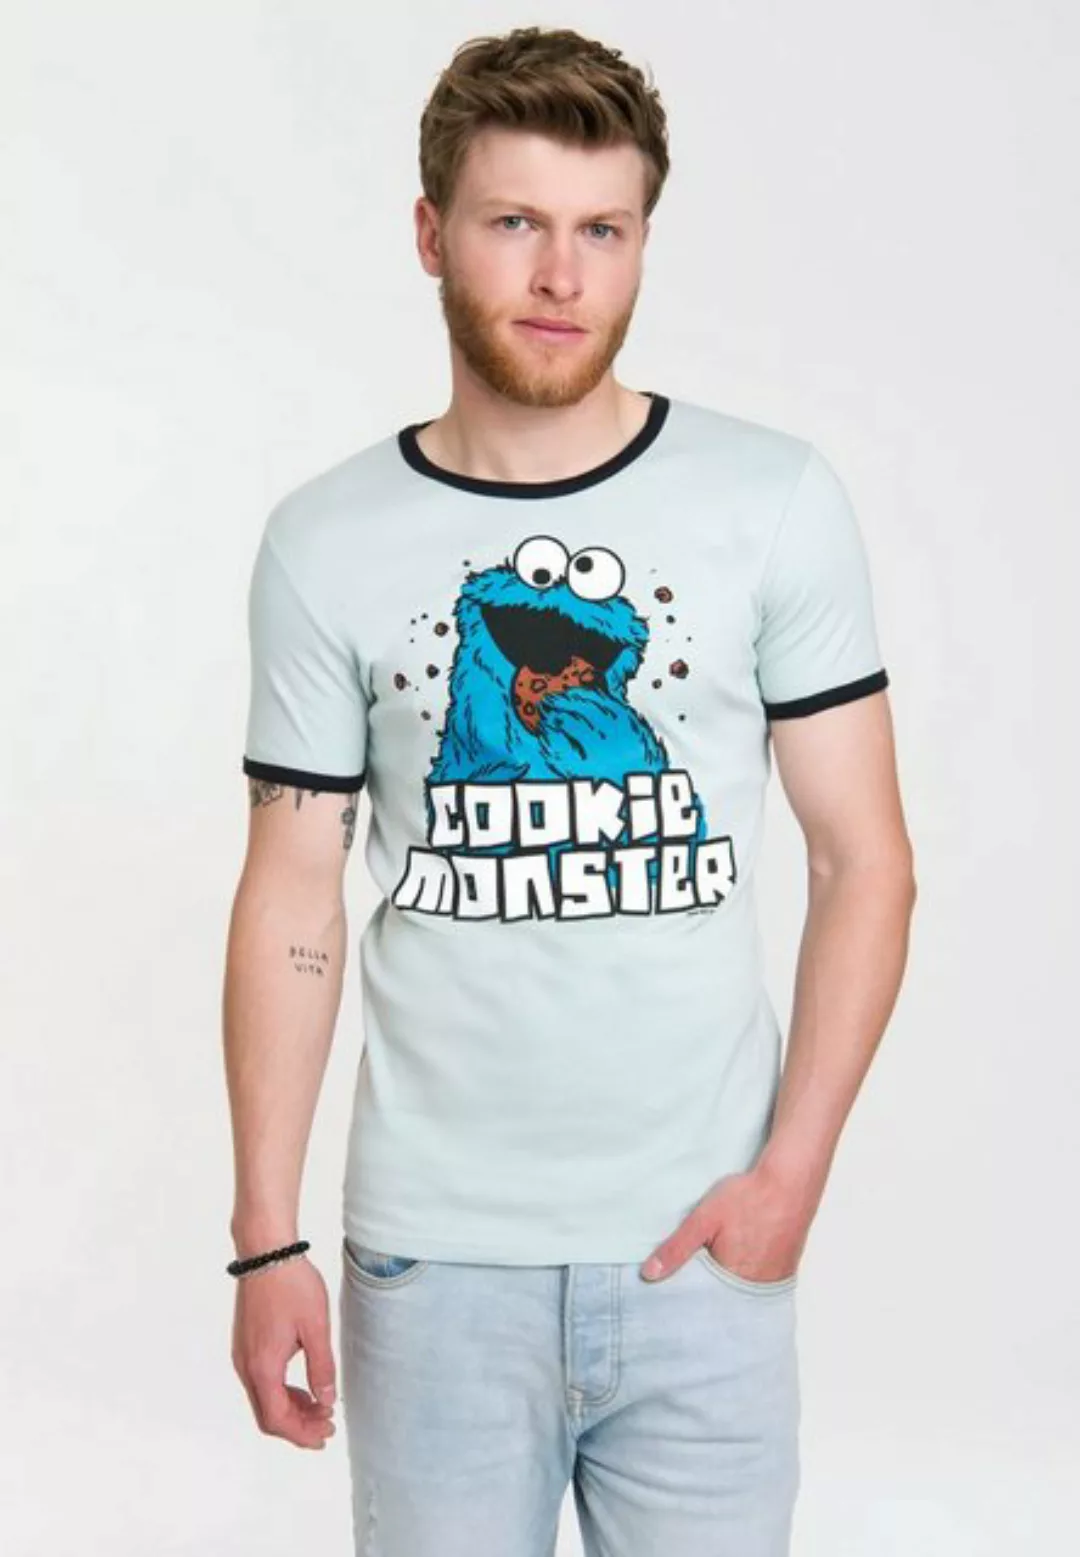 LOGOSHIRT T-Shirt "Cookie Monster" günstig online kaufen